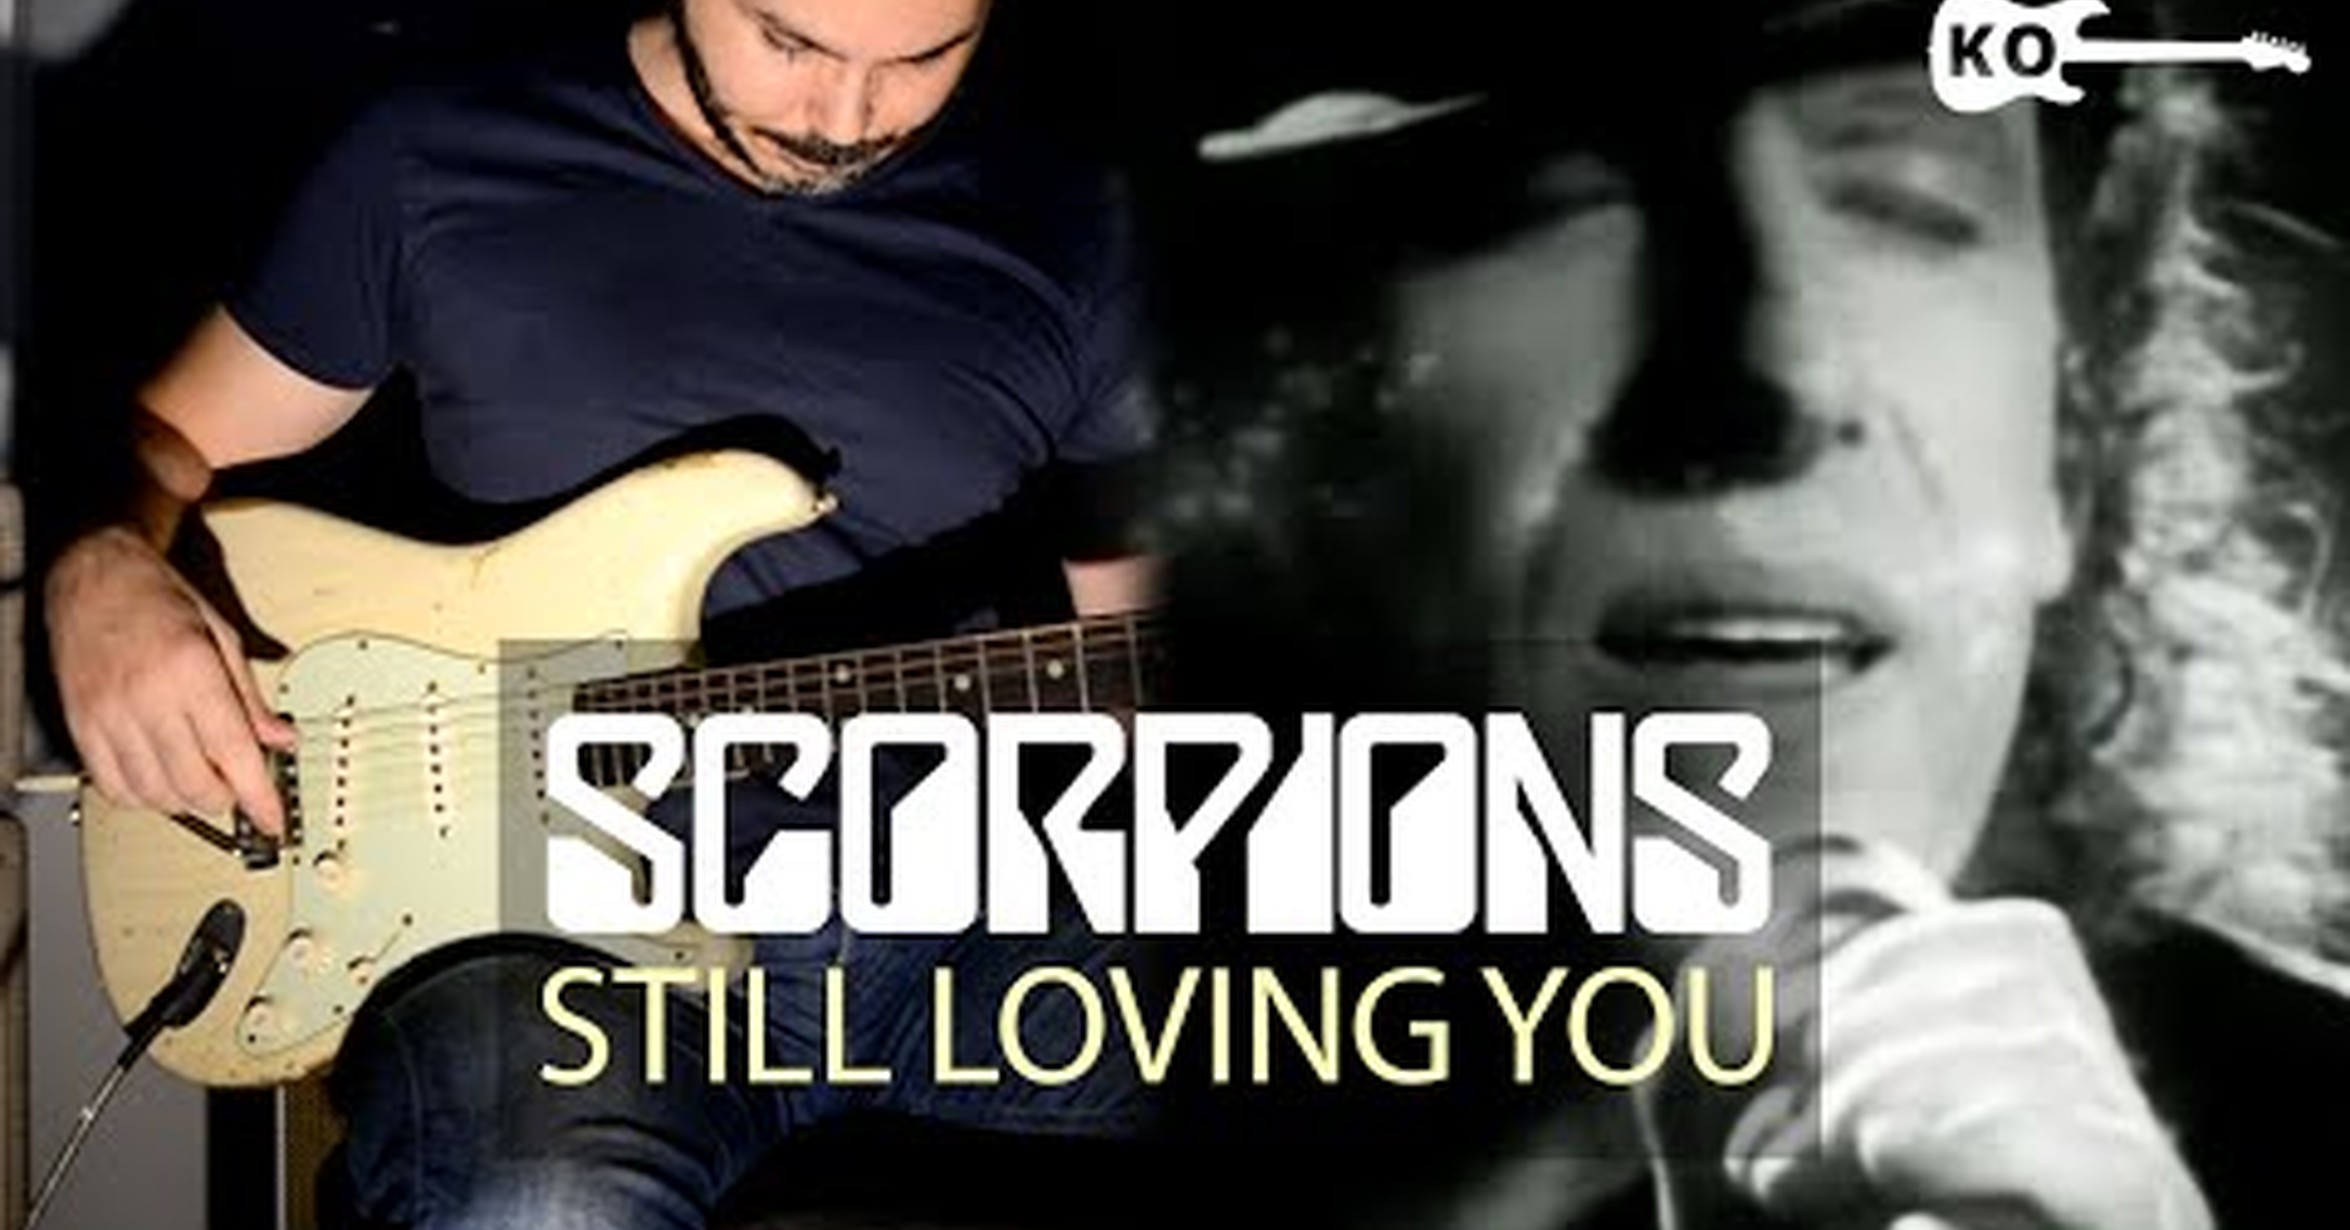 L still loving you. Scorpions still loving you обложка. Scorpions still loving you Cover. Scorpions "still loving you" 1992 обложка. Scorpions still loving you 1992 обложка альбома.